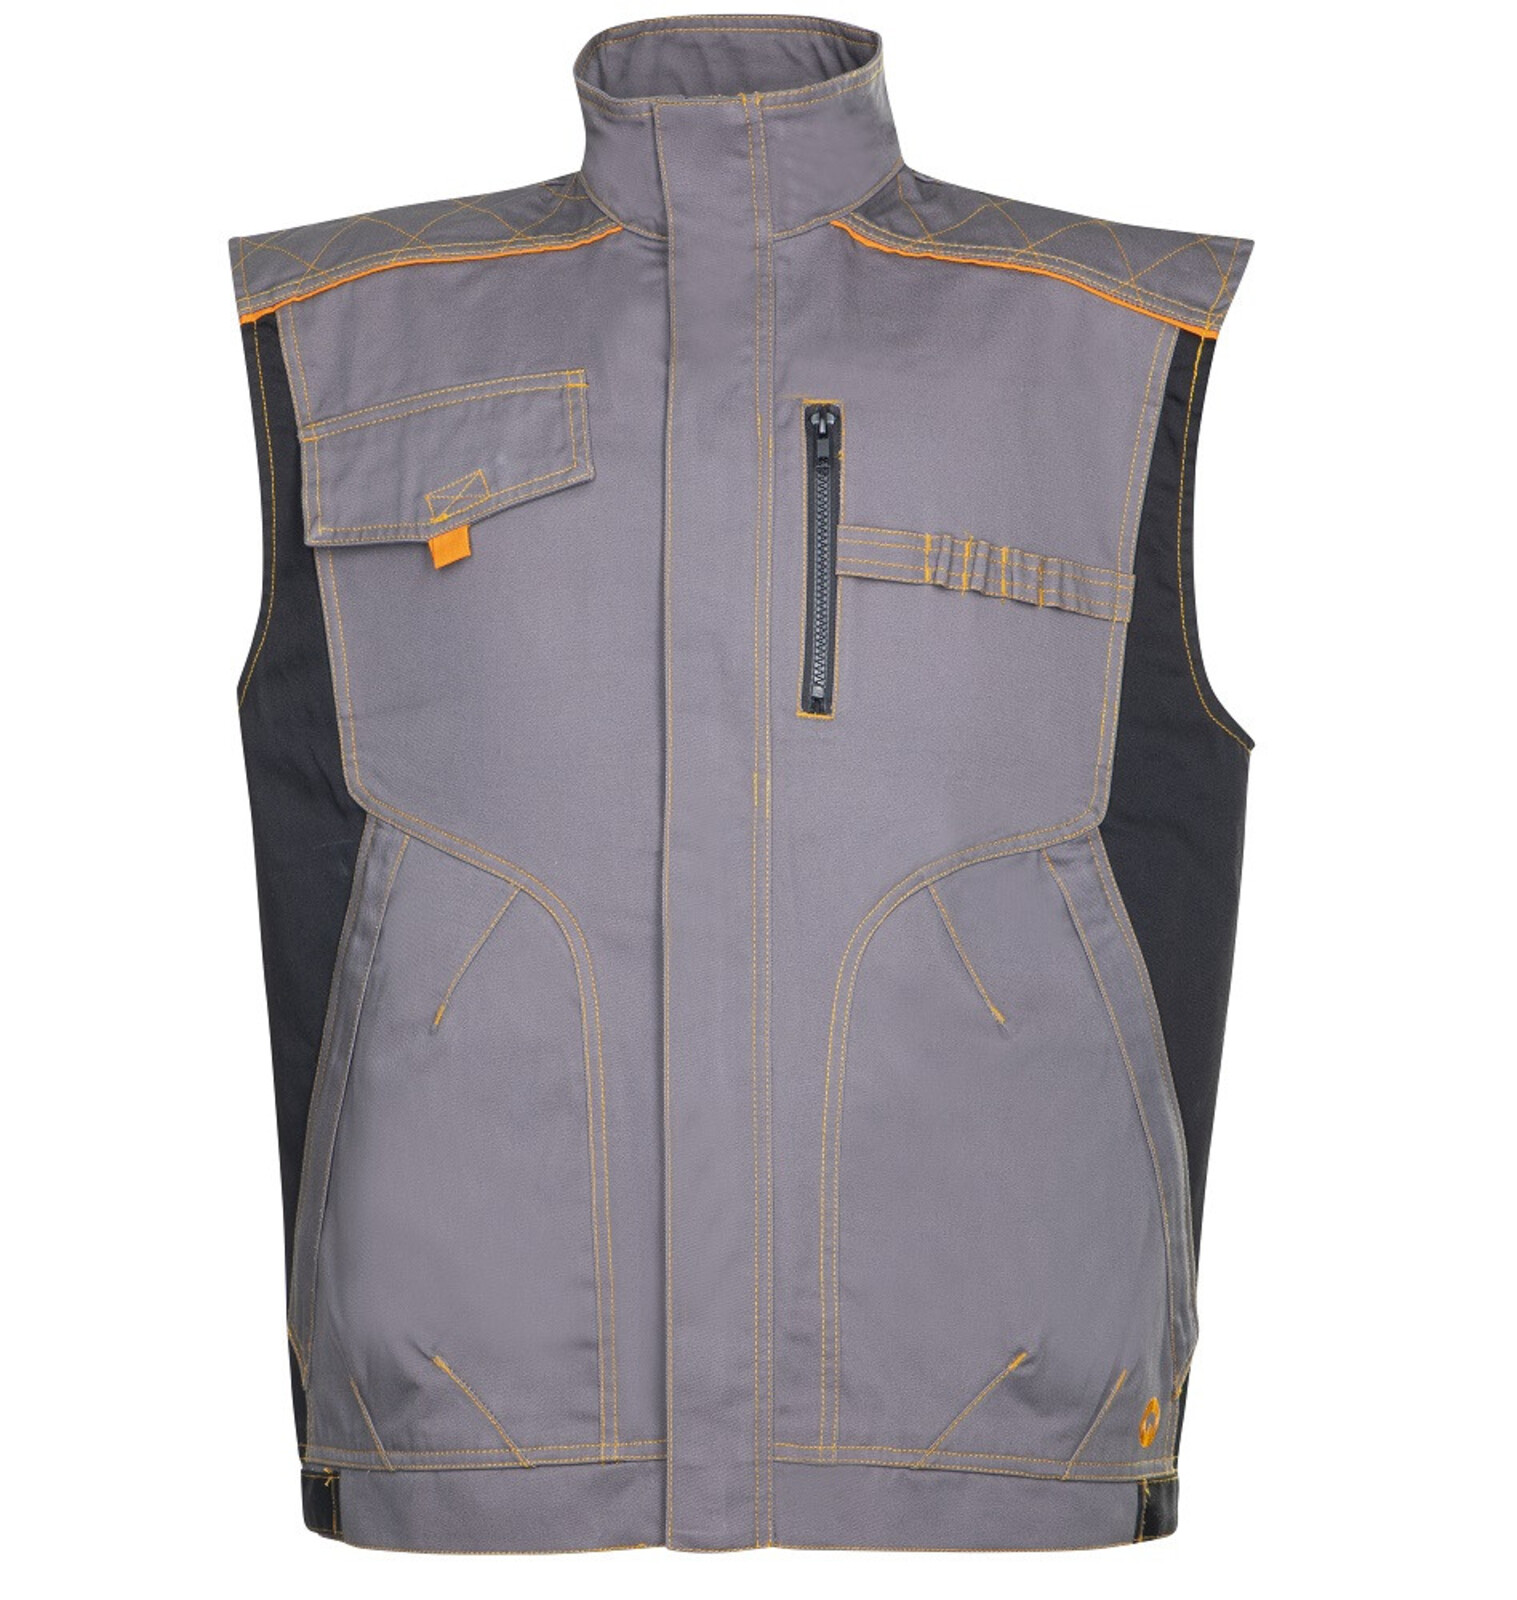 Pánska montérková vesta Ardon Vision - veľkosť: 56, farba: sivá/oranžová